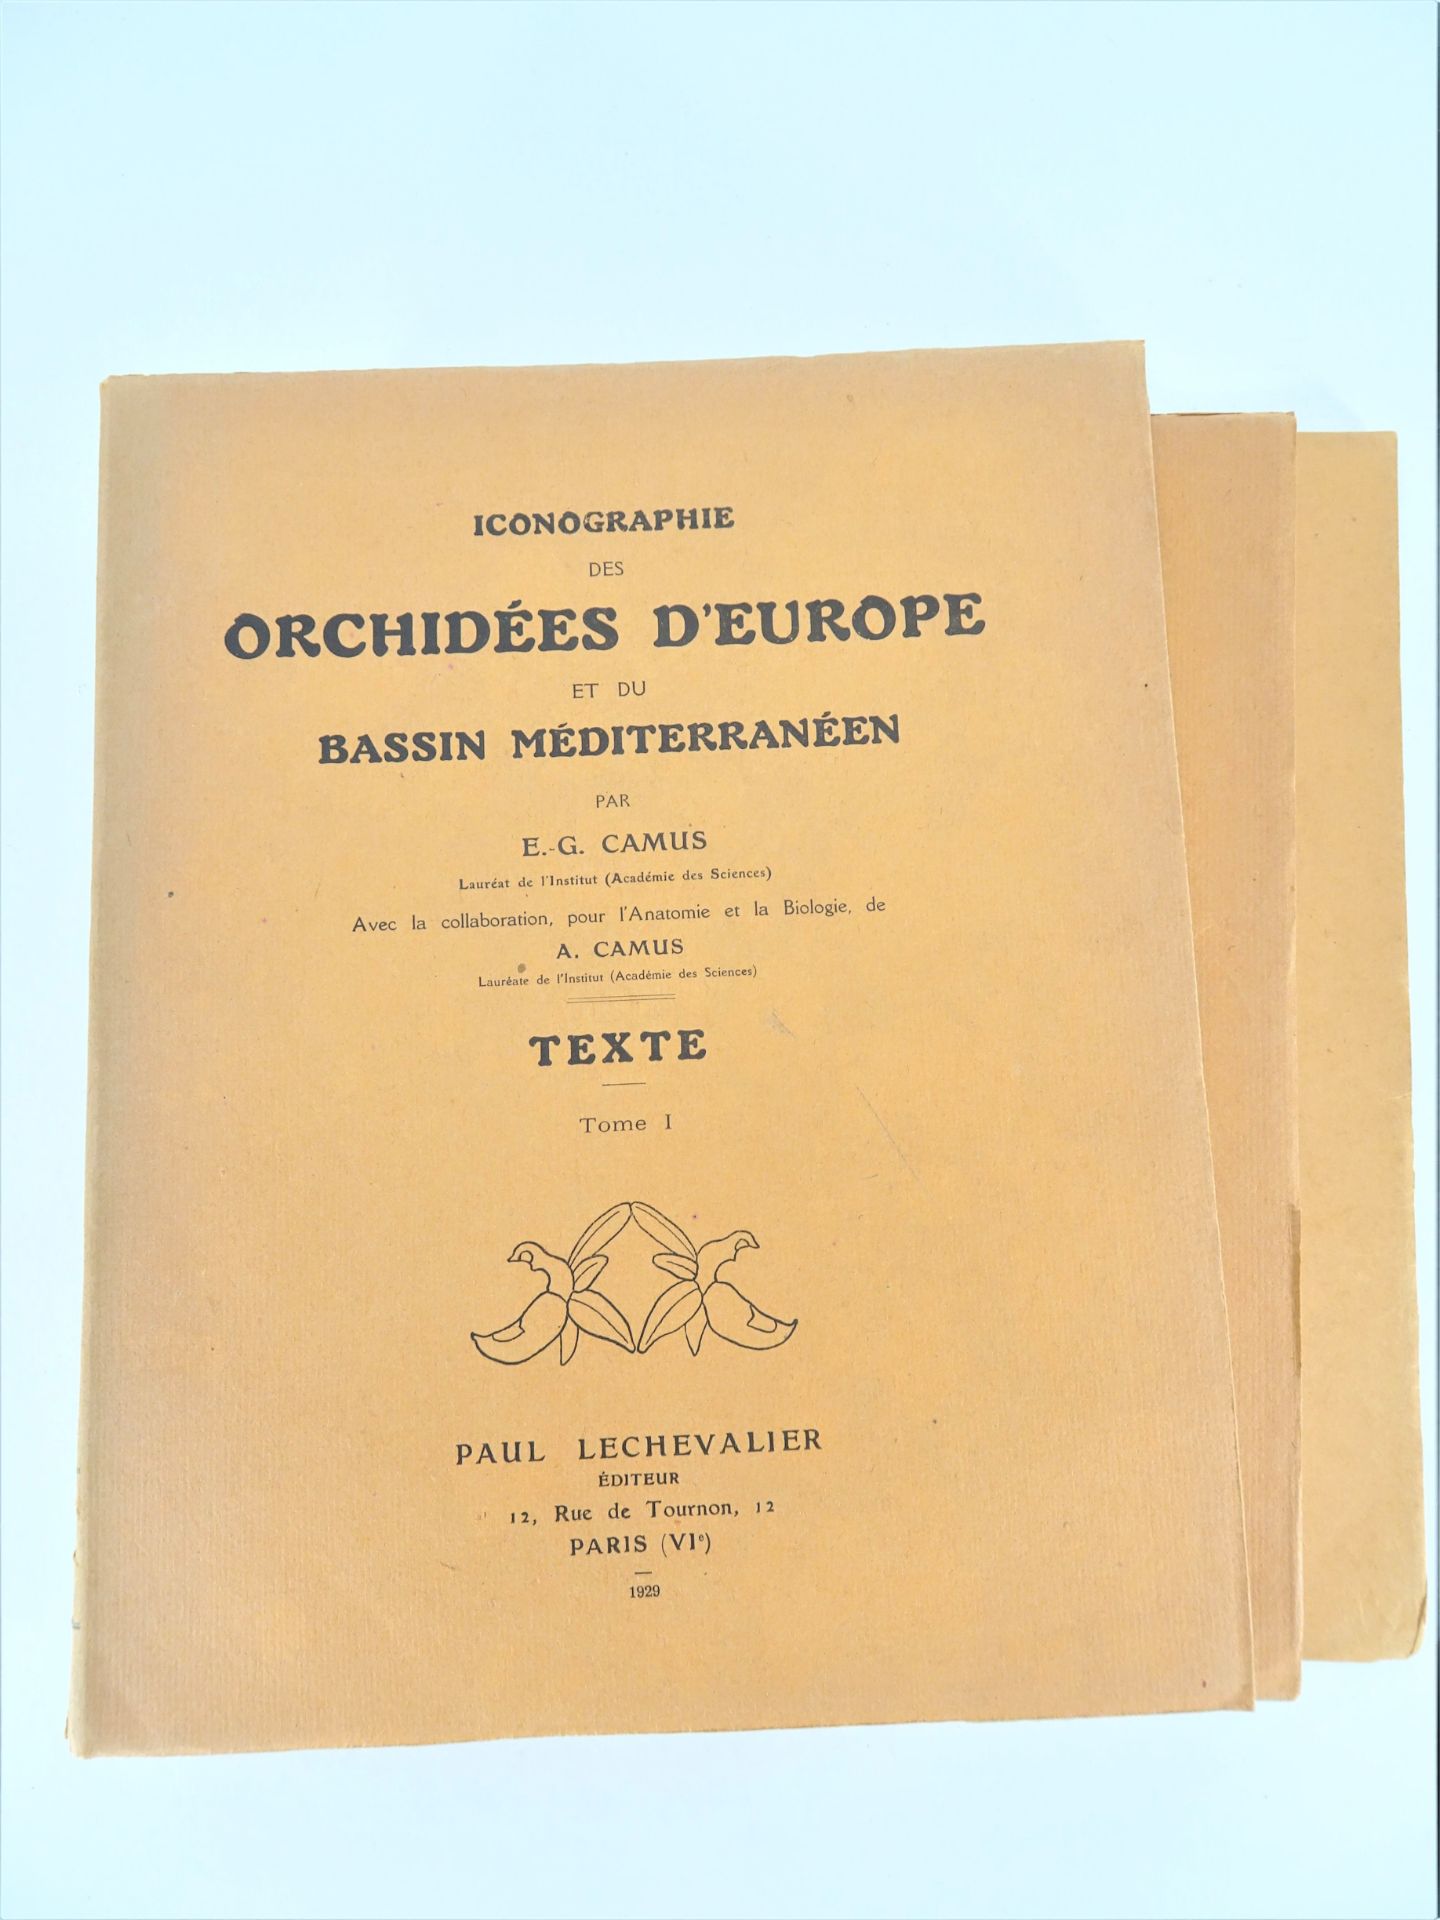 |Orchidaceae| E. G. Camus, "Iconographie des Orchidées d'Europe et du Bassin Méditerranéen",